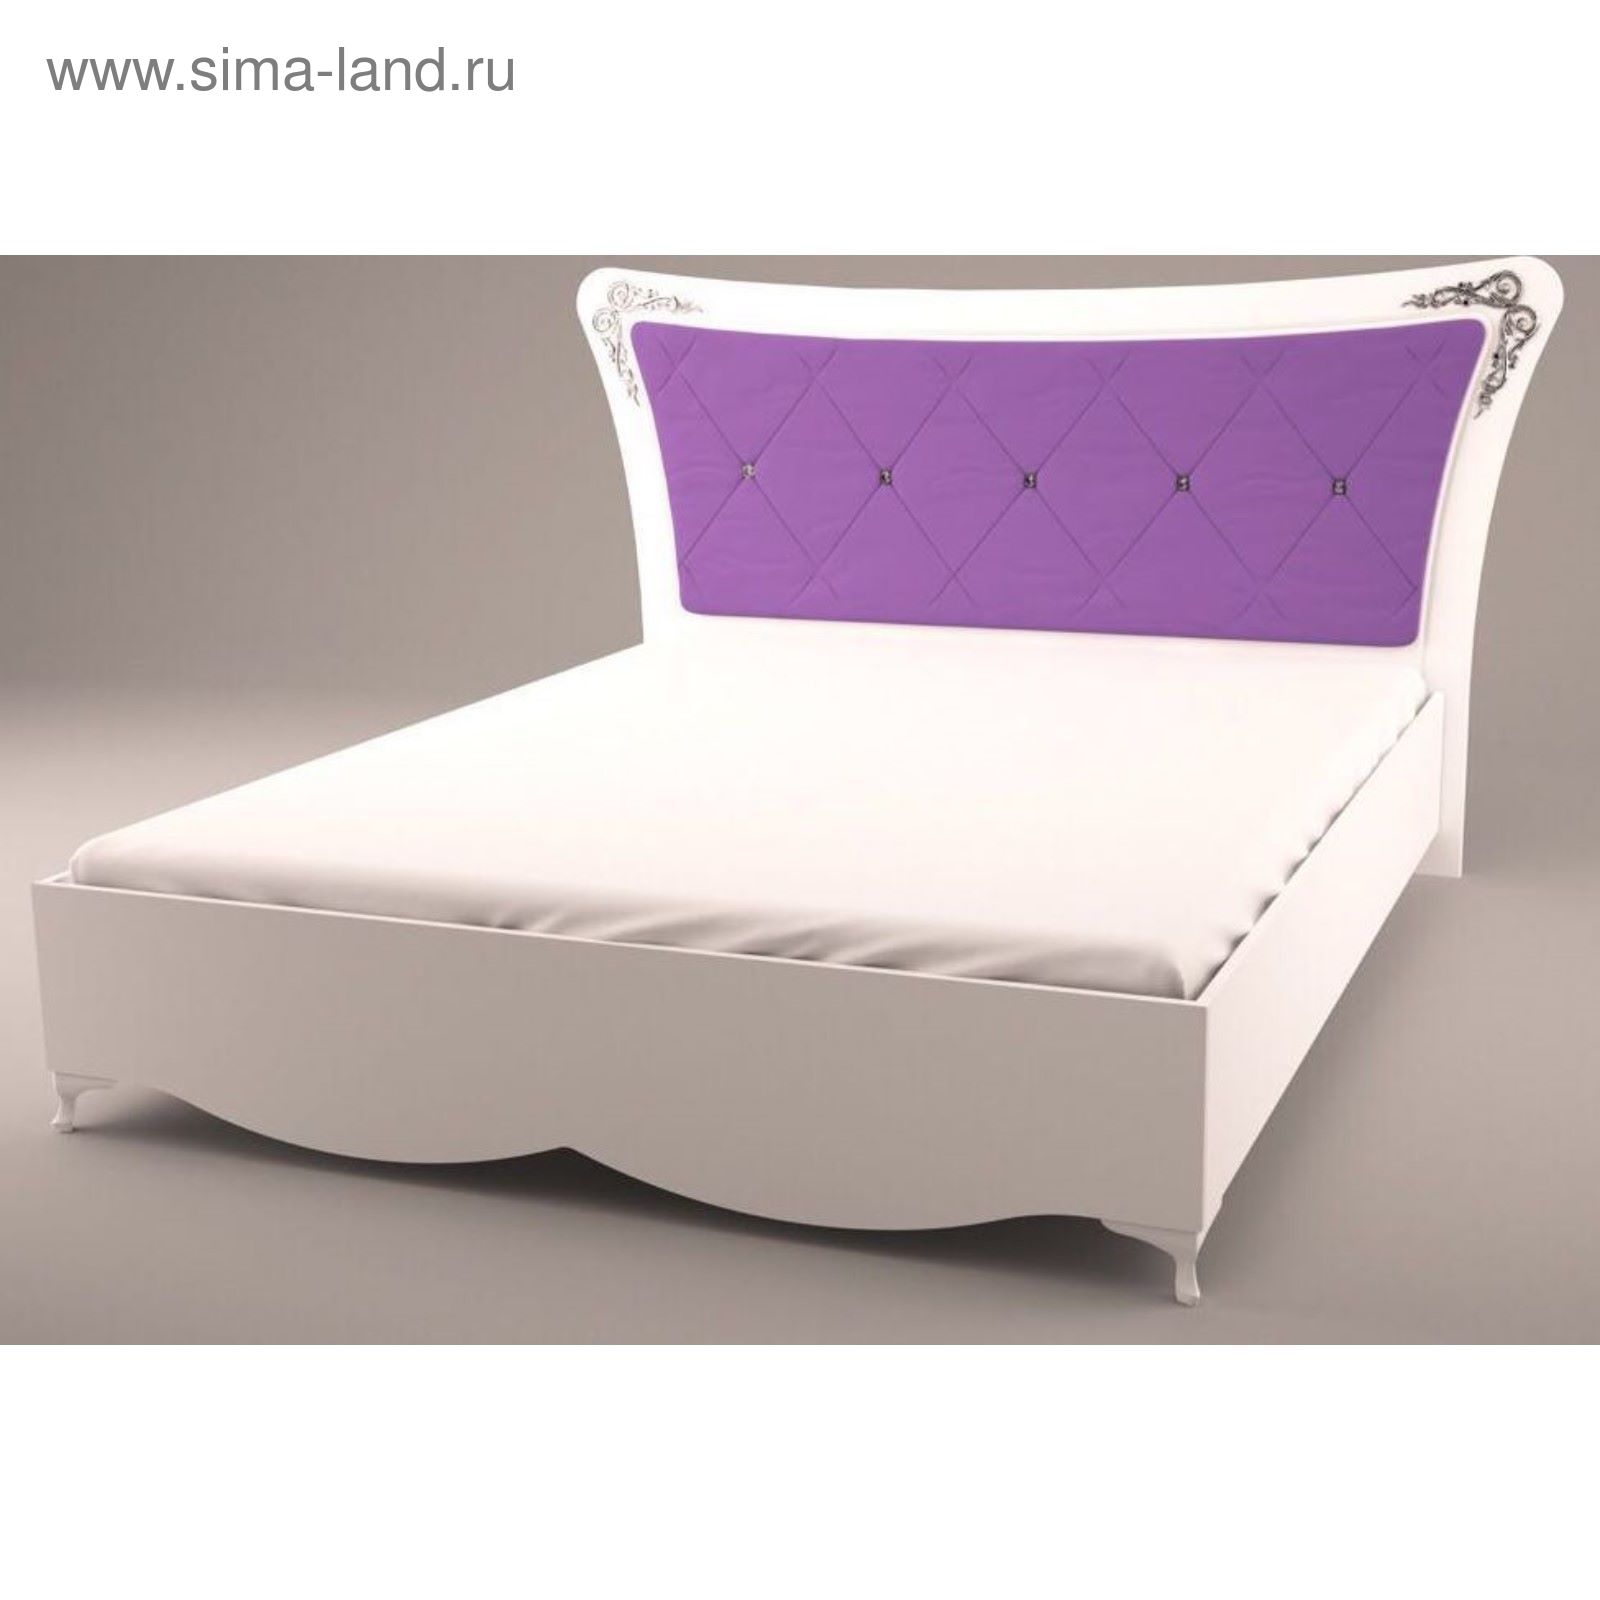 Кровать Аделина АСМ мебель